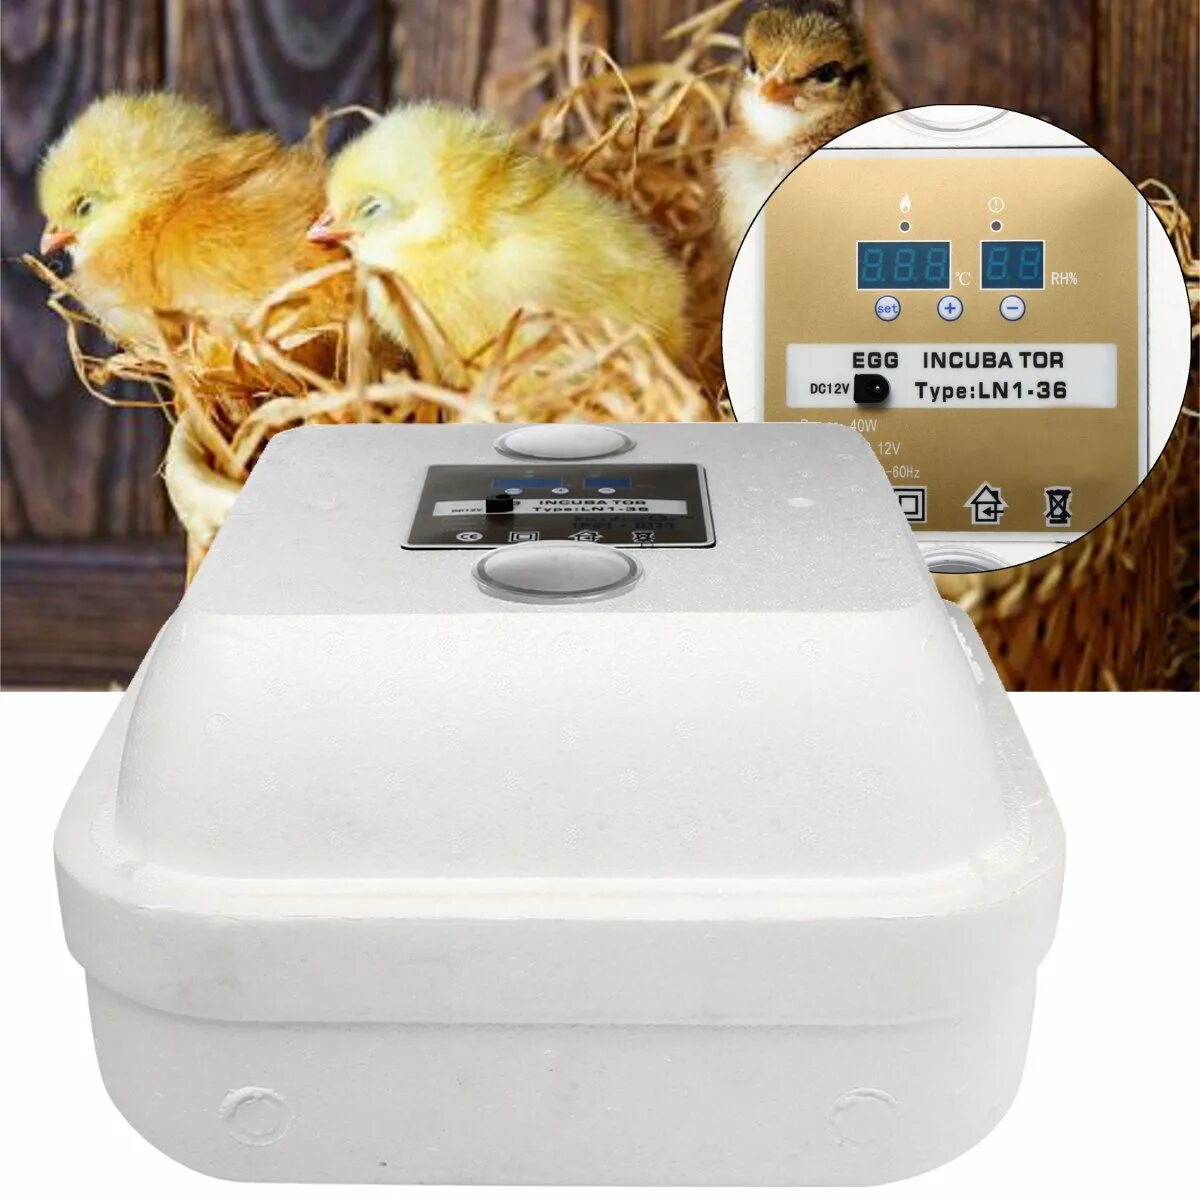 Домашний инкубатор автоматический. Инкубатор Egg incubator. Автоматический инкубатор яиц Chicken Hatcher. Инкубатор птичий двор а-64. Dc12v / ac220v инкубатор для курицы.